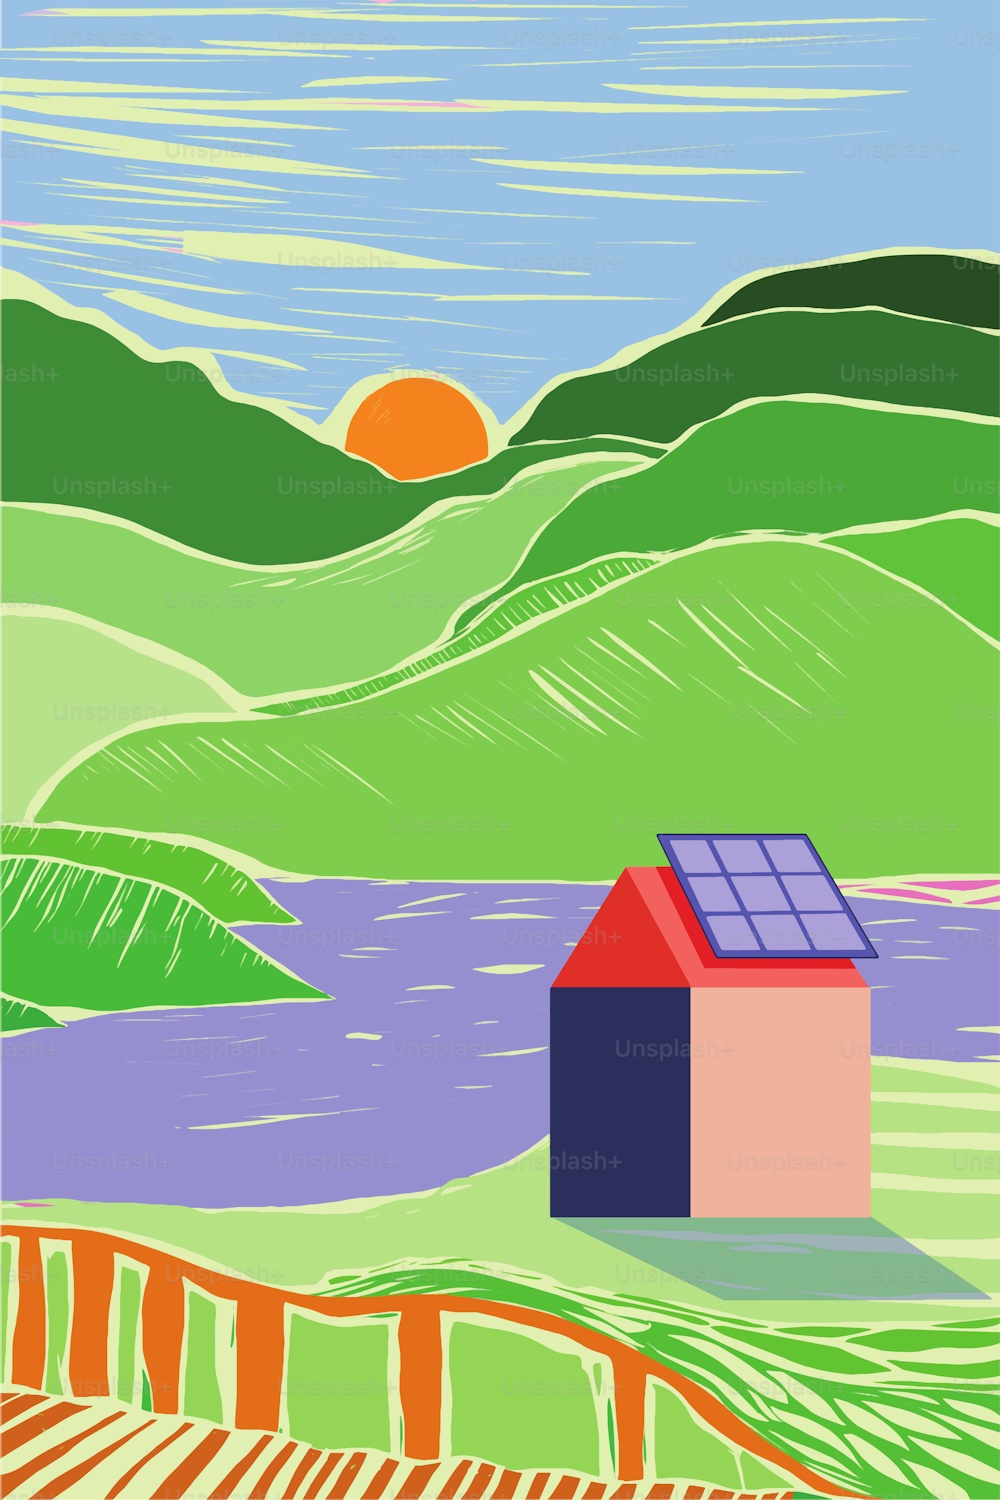 Ein kleines Dorf, das durch die Installation von Sonnenkollektoren auf den Dächern grün und nachhaltig wird. Stil der Druckgrafik